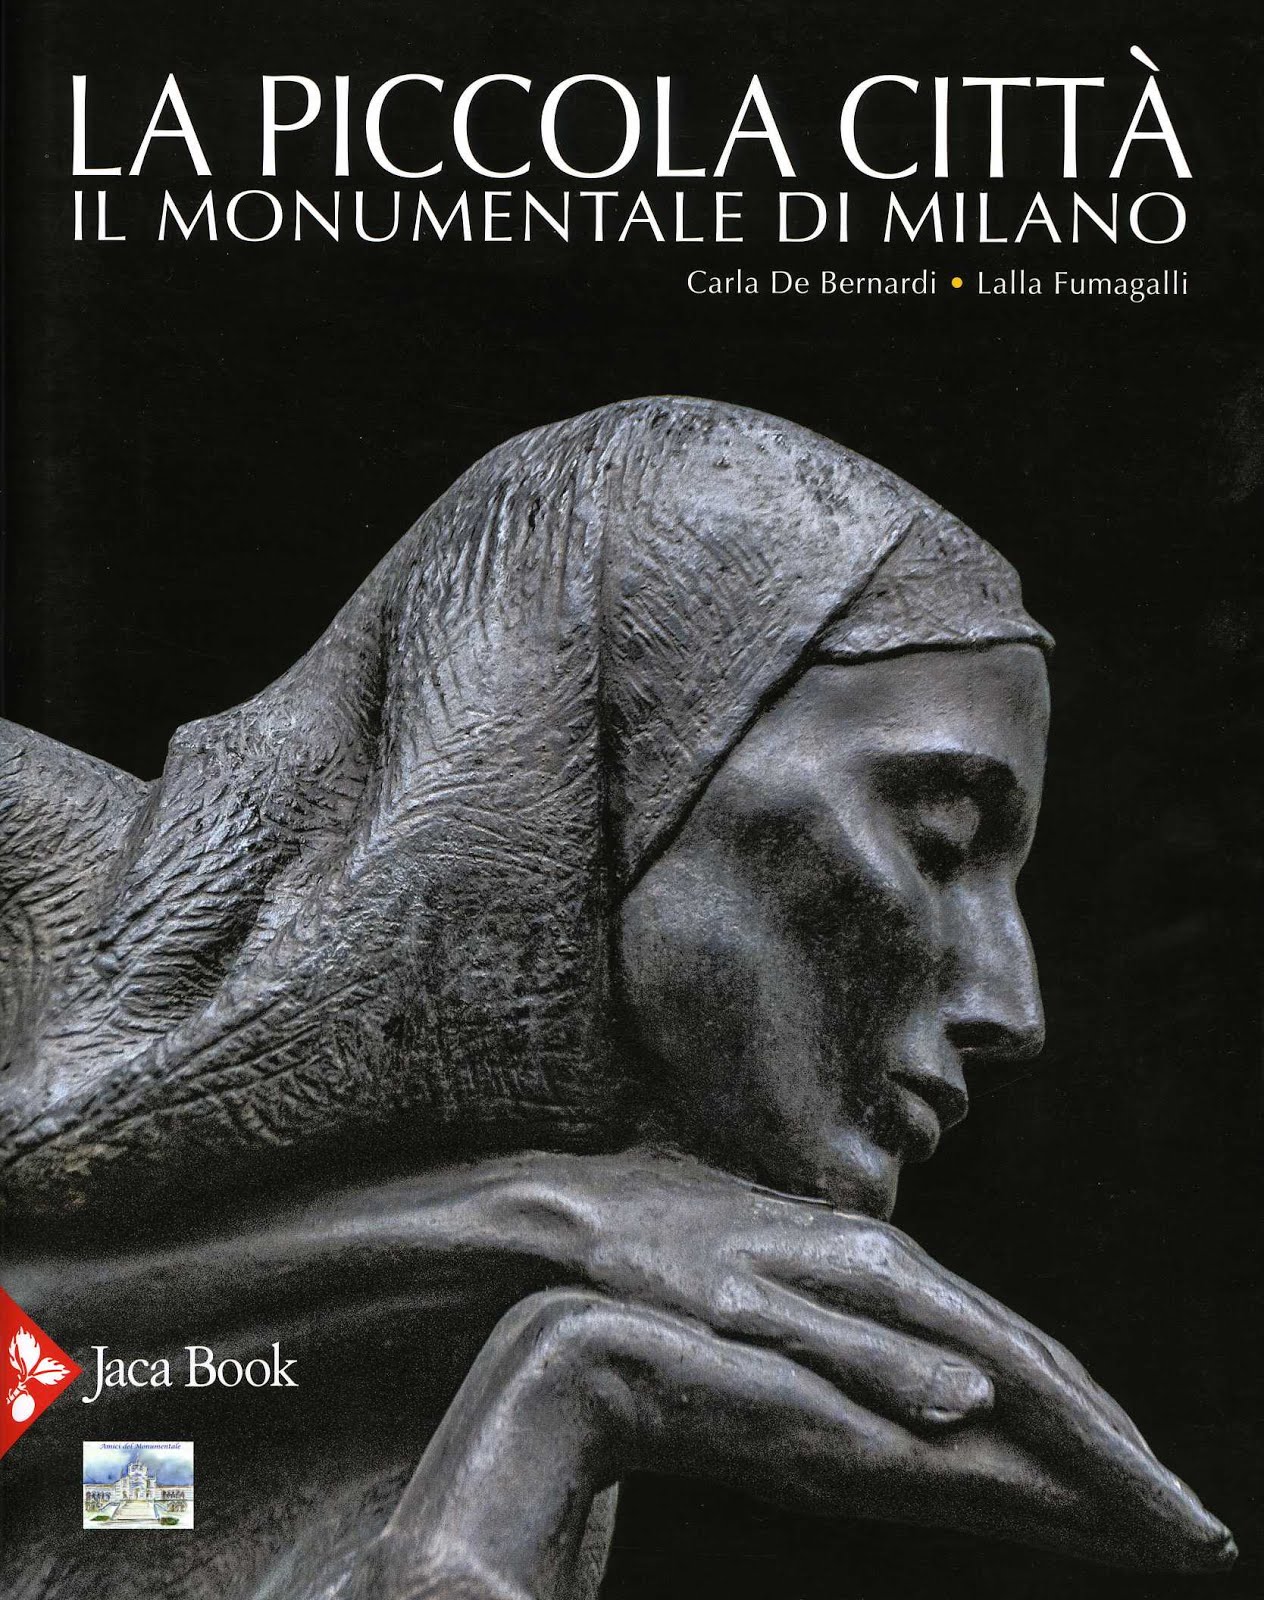 28 10 Museo Civico Casale Monferrato presentazione volume “La Piccola Citt  – Il Monumentale di Milano”